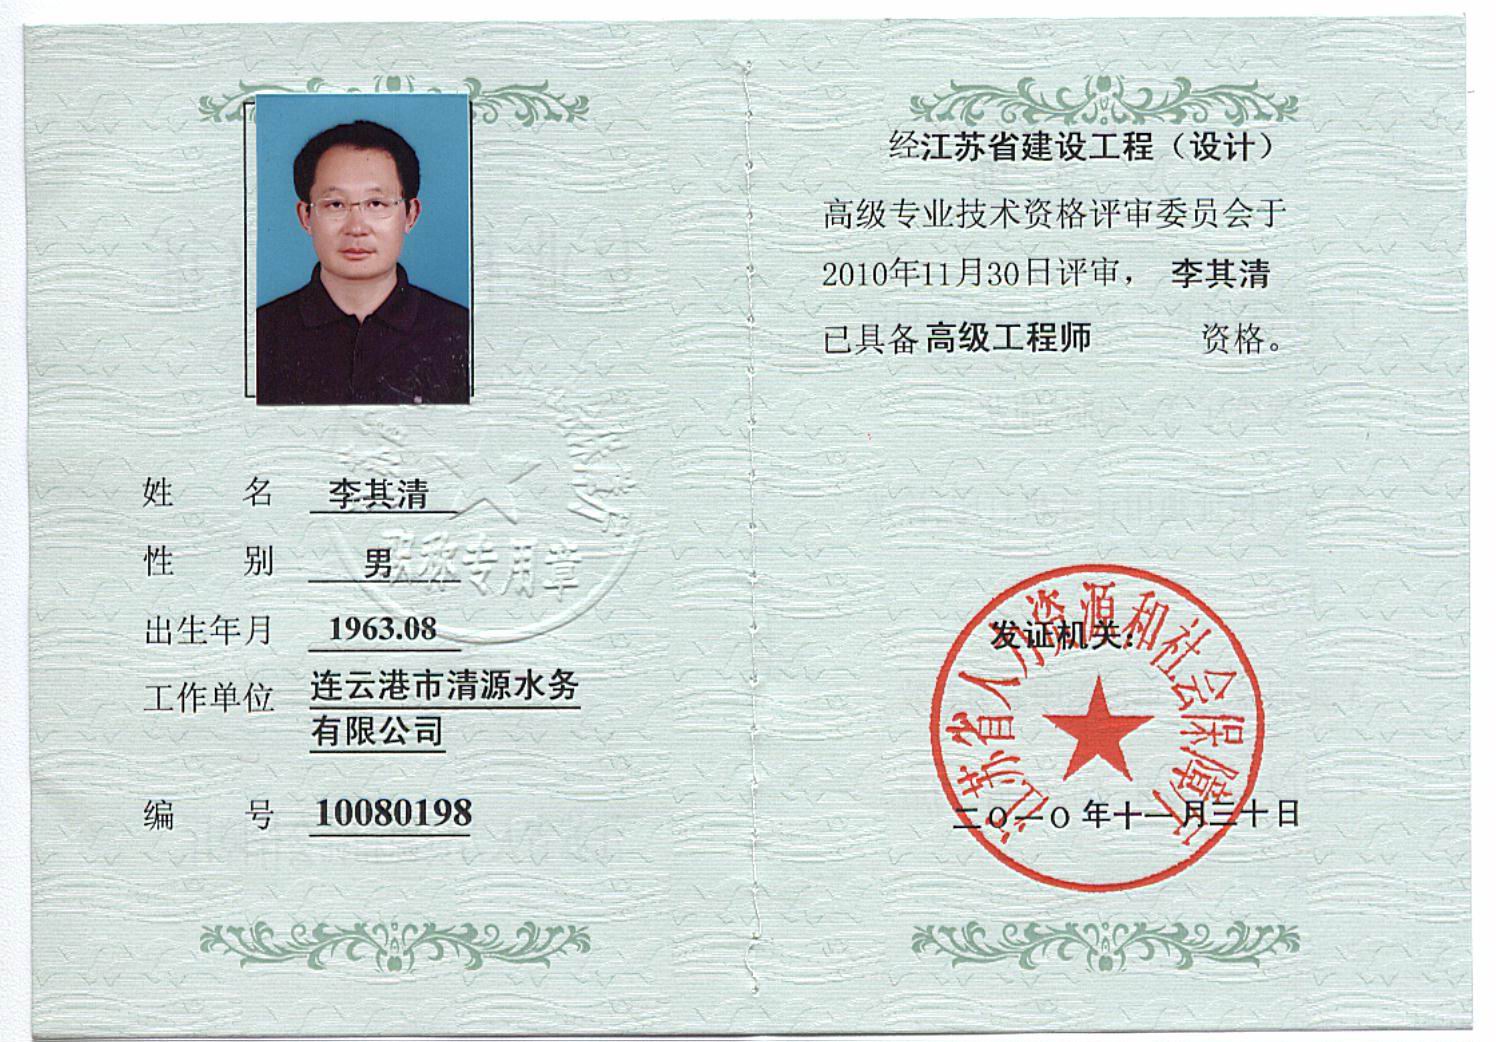 机电工程 高级工程师证书 1陈华龙广东省职称证书(2000101079469)电气高级工程师-2.3.1 ...